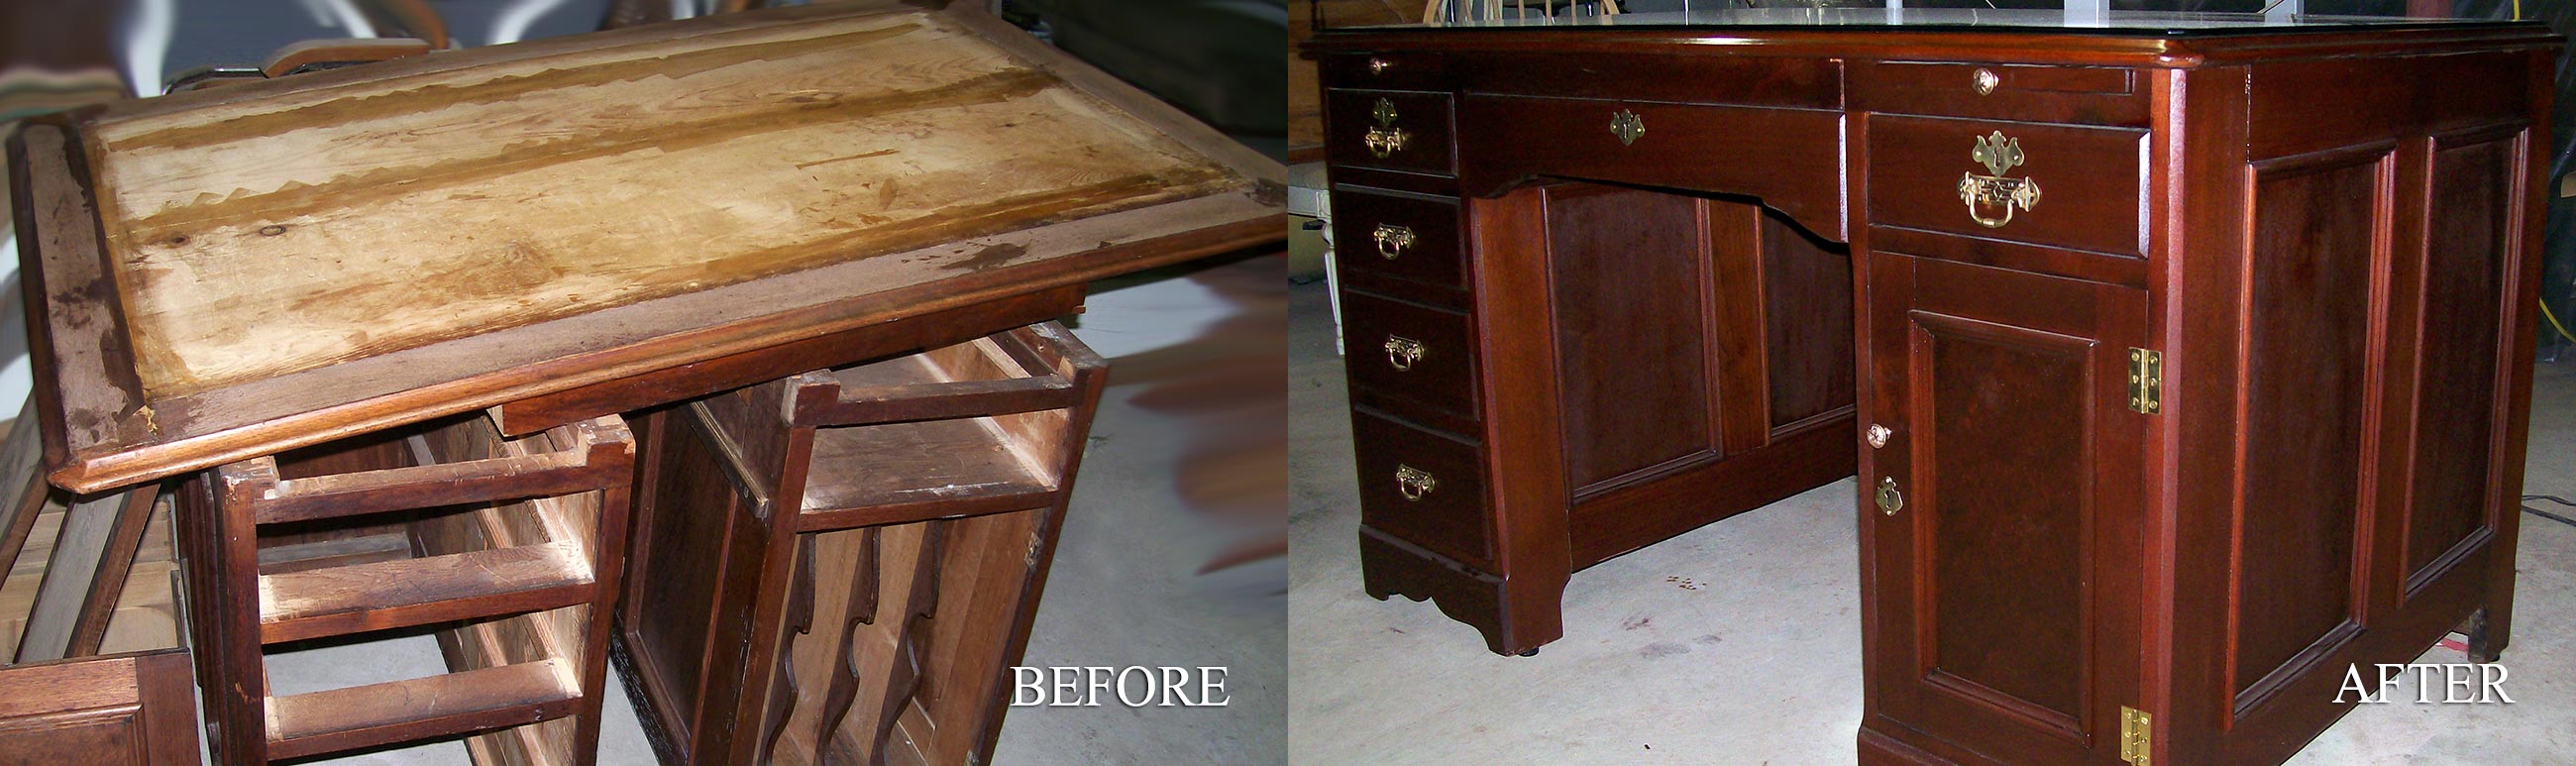 Furniture Repair Refinishing Lefort Restorations Hanover Ma